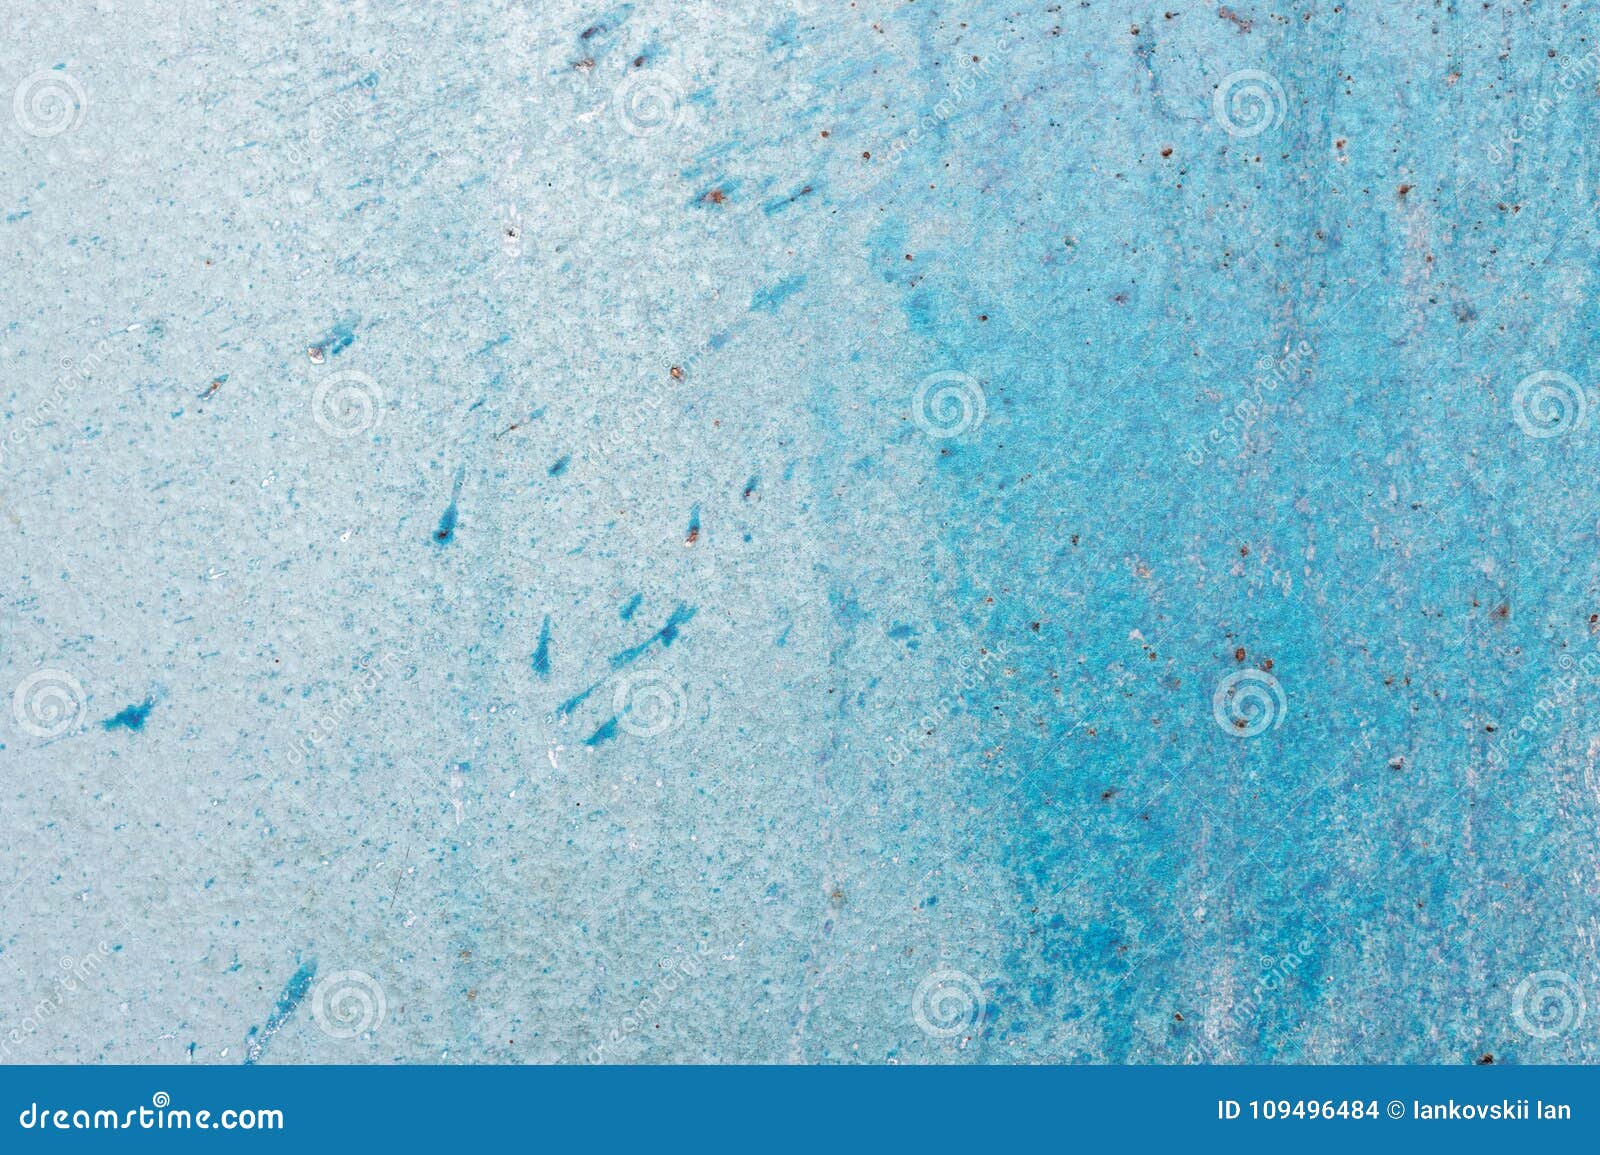 Strukturierte Metalloberfläche färbte unvorsichtig blaue Farbe und verblaßte in der Sonne im blassen Grau mit rostigen Flecken Eine alte Schmutzbeschaffenheit auf einer Metalloberfläche